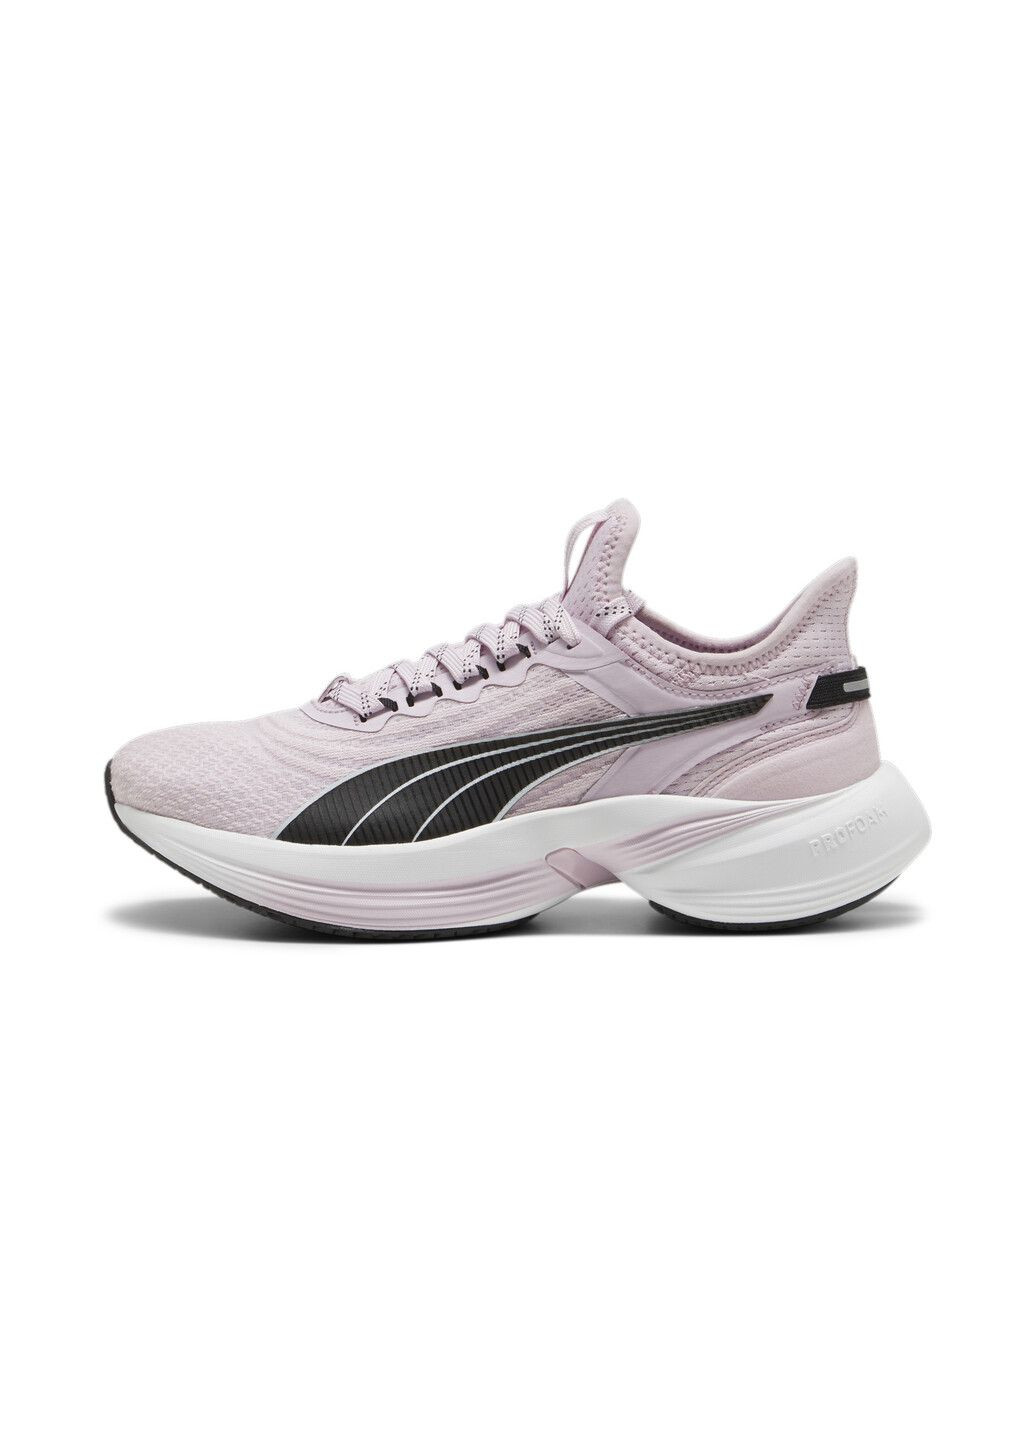 Пурпурные всесезонные кроссовки conduct pro running shoe Puma